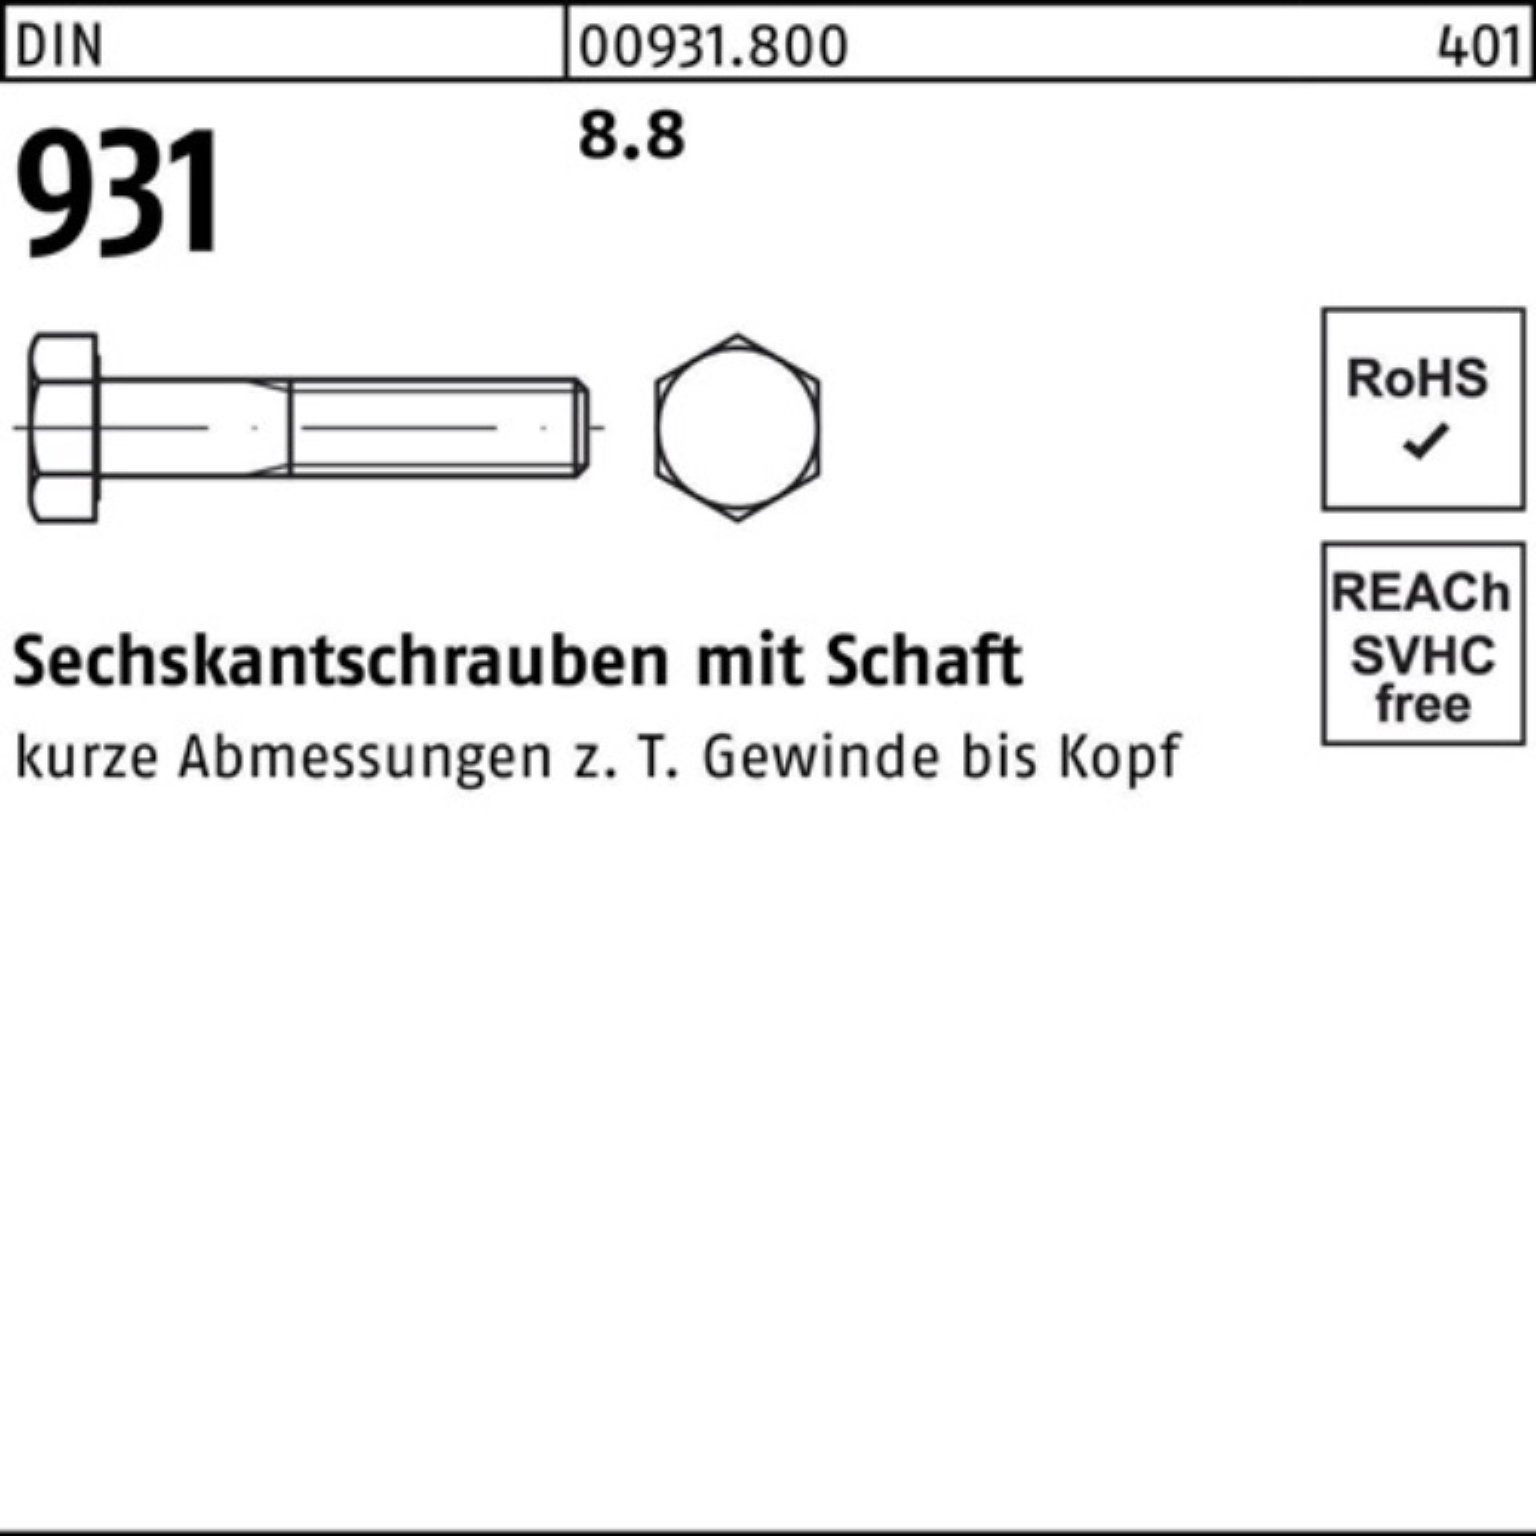 Reyher Sechskantschraube 100er Pack 95 Stück 8.8 931 DIN 50 DIN Sechskantschraube Schaft M12x